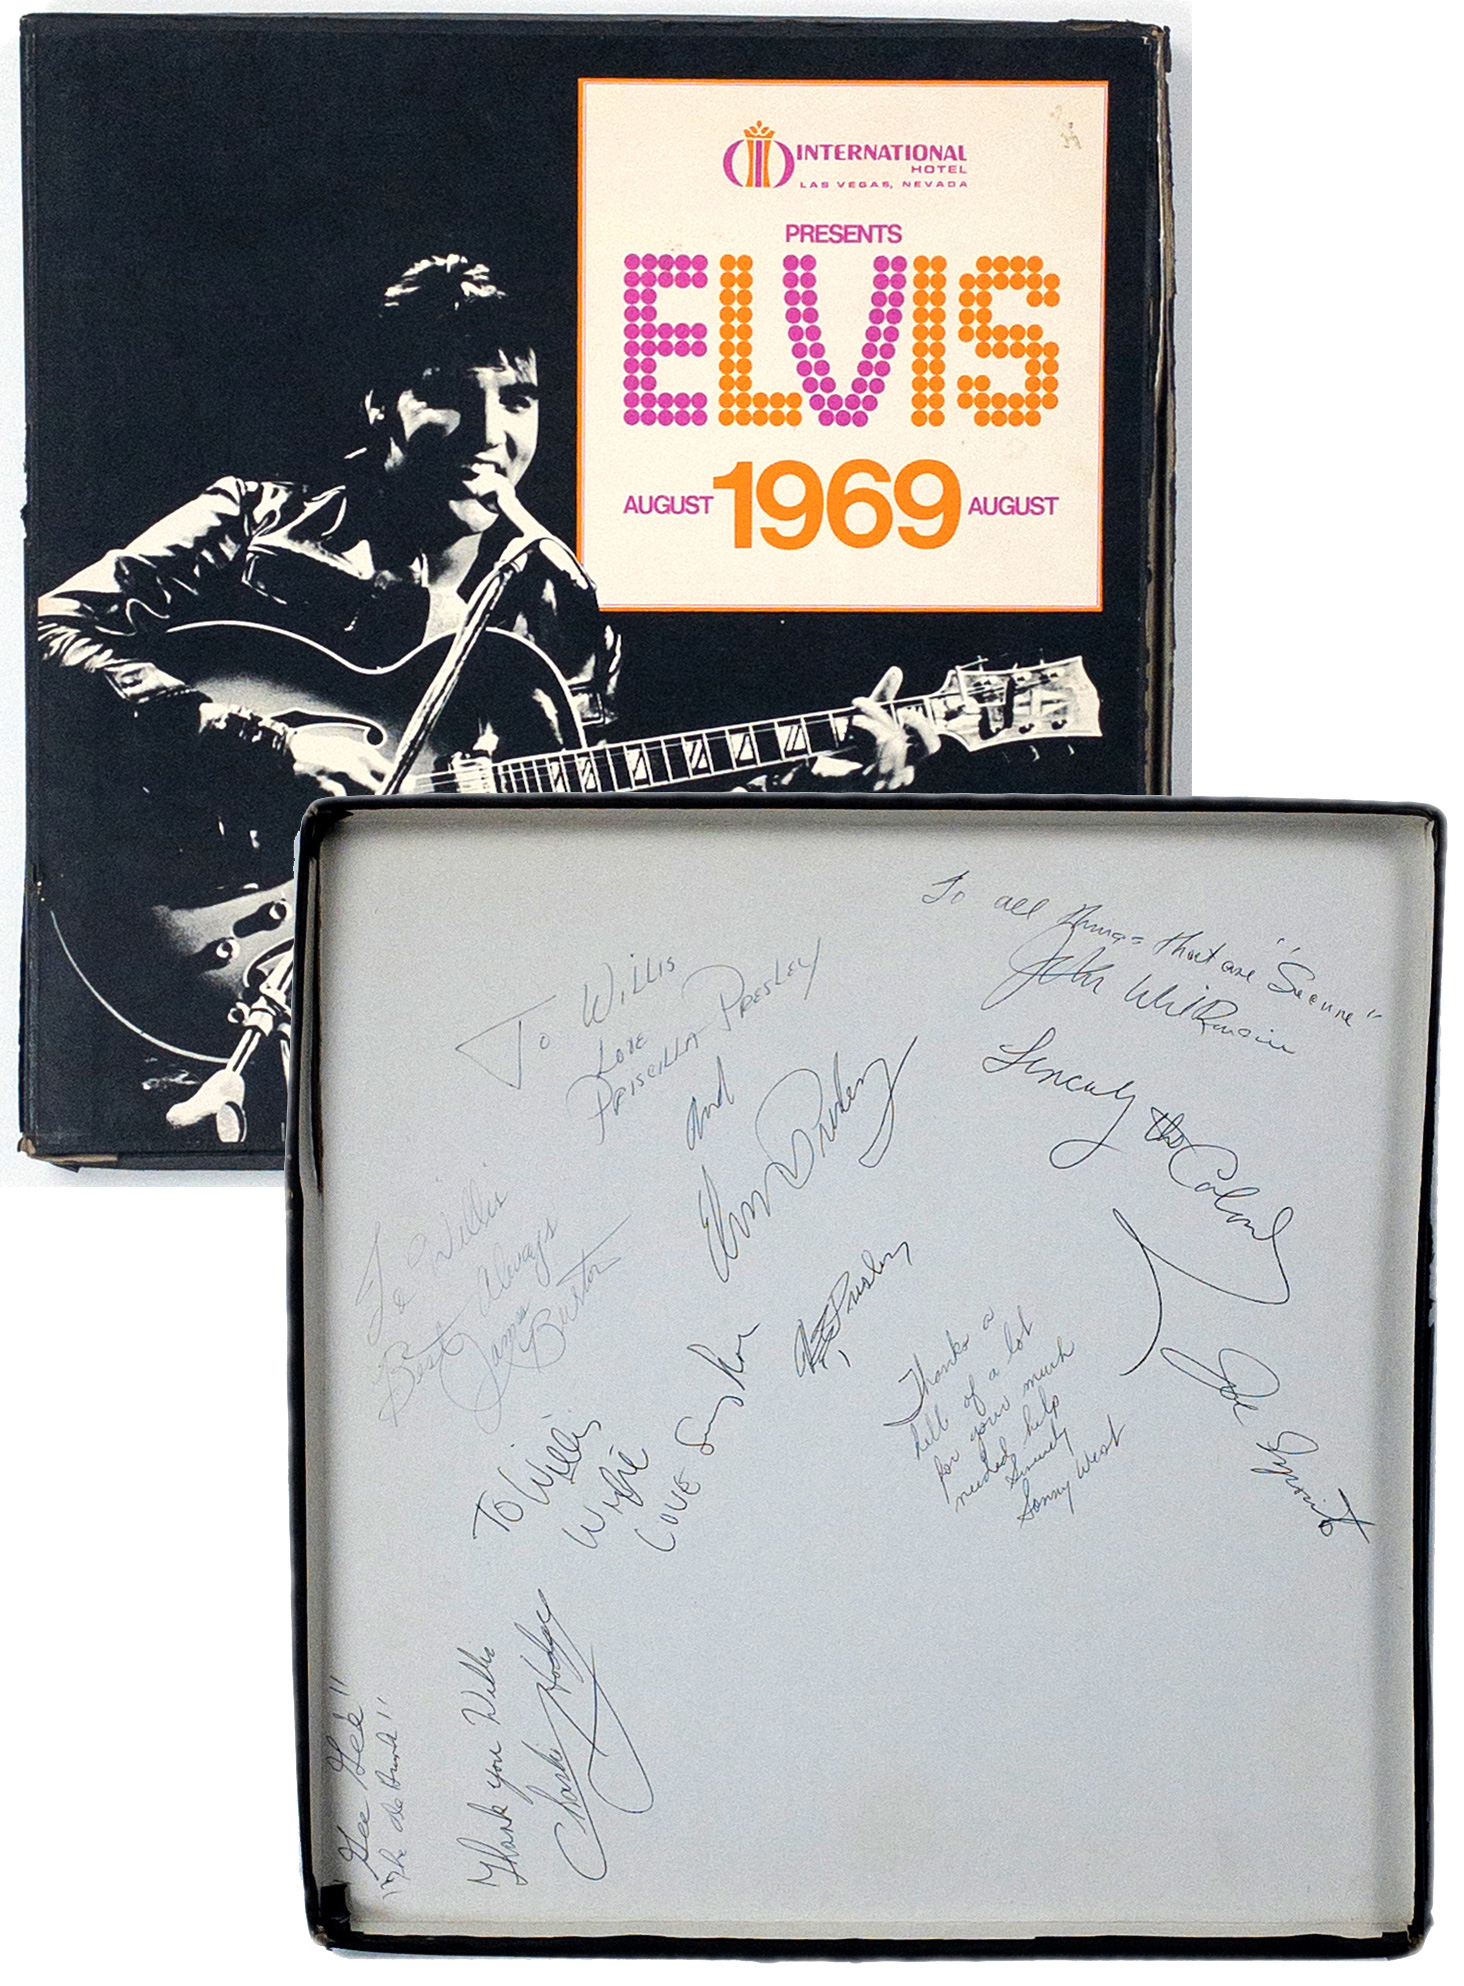 6 x 4 inches Autograph Elvis Presley Postcard Portrait